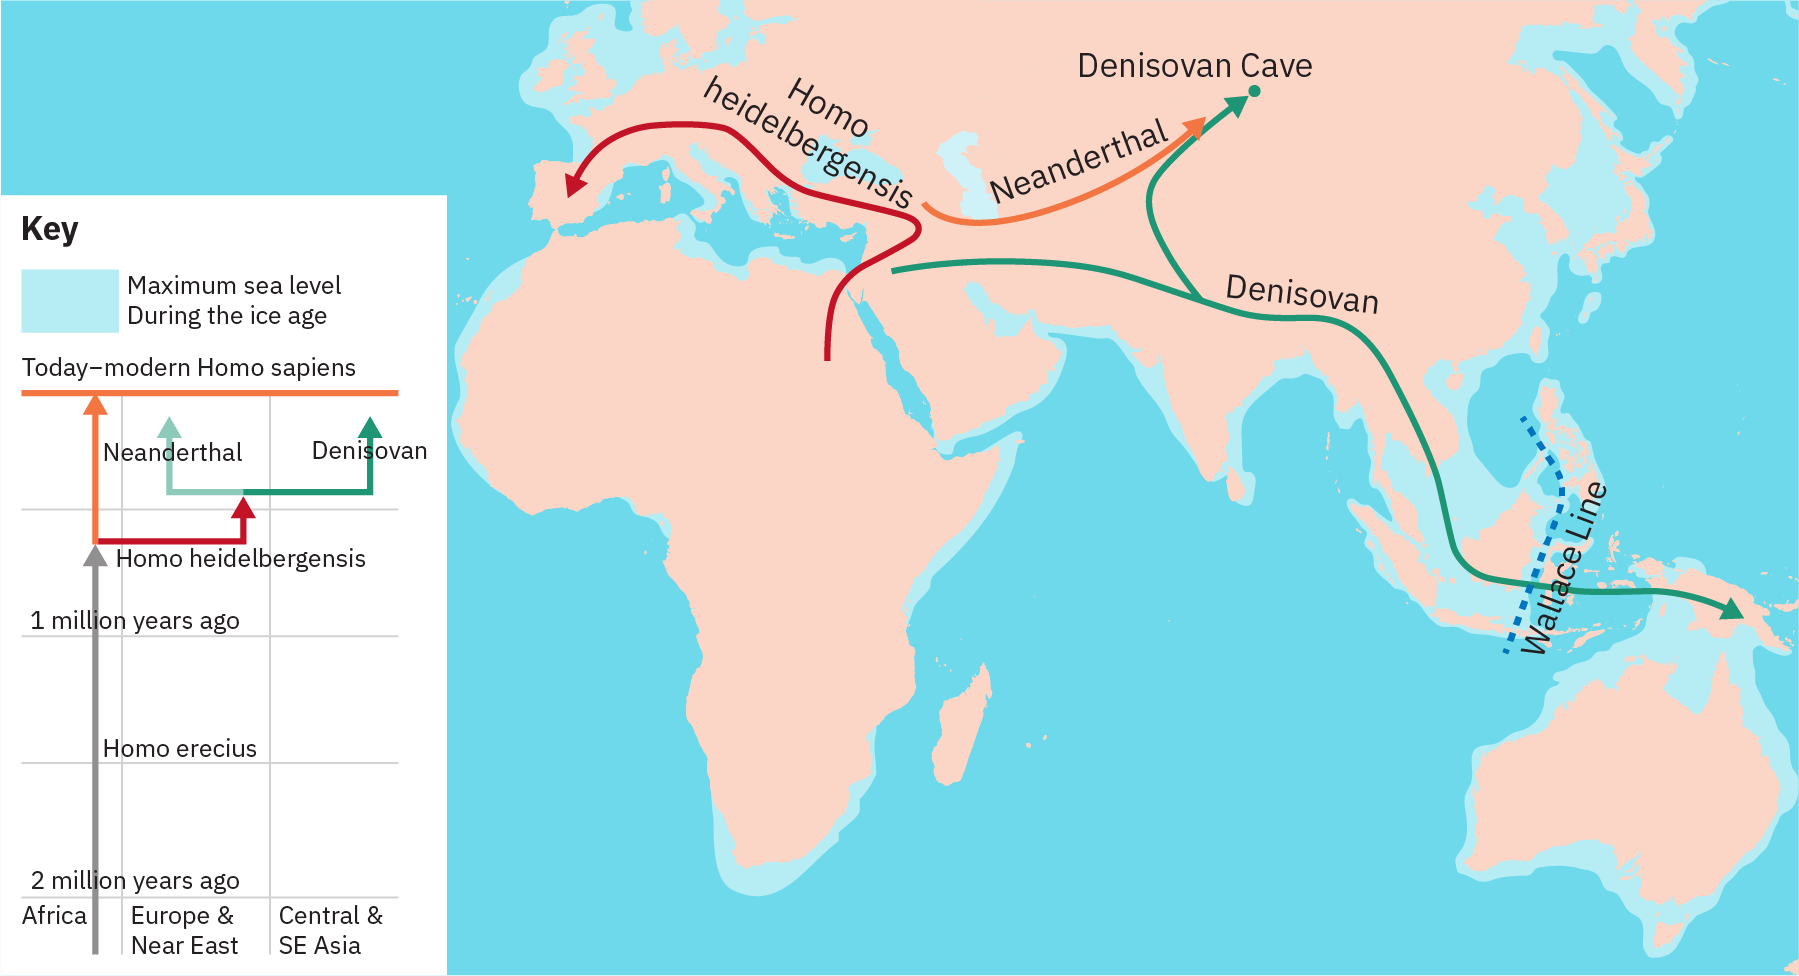 تُظهر شجرة النشوء والتطور خطًا يمتد عبر الزمن من 2 مليون سنة مضت إلى «الإنسان العاقل الحديث اليوم». بعيدًا عن هذا الخط يوجد سطر لـ «Homo heidelbergensis»، وهذا الخط بدوره يتفرع إلى سطرين لـ «نياندرتال» و «دينيسوفان». تُصوِّر الخريطة سكان دينيسوفان يهاجرون من الشرق الأوسط عبر شبه القارة الهندية إلى نيوزيلندا. يؤدي فرع من مسار دينيسوفان إلى روسيا. تبين أن إنسان نياندرتال قد هاجر من الشرق الأوسط إلى روسيا. تبين أن Homo heideibergensis قد هاجر من إفريقيا، عبر الشرق الأوسط، إلى أوروبا، وصولاً إلى إسبانيا.